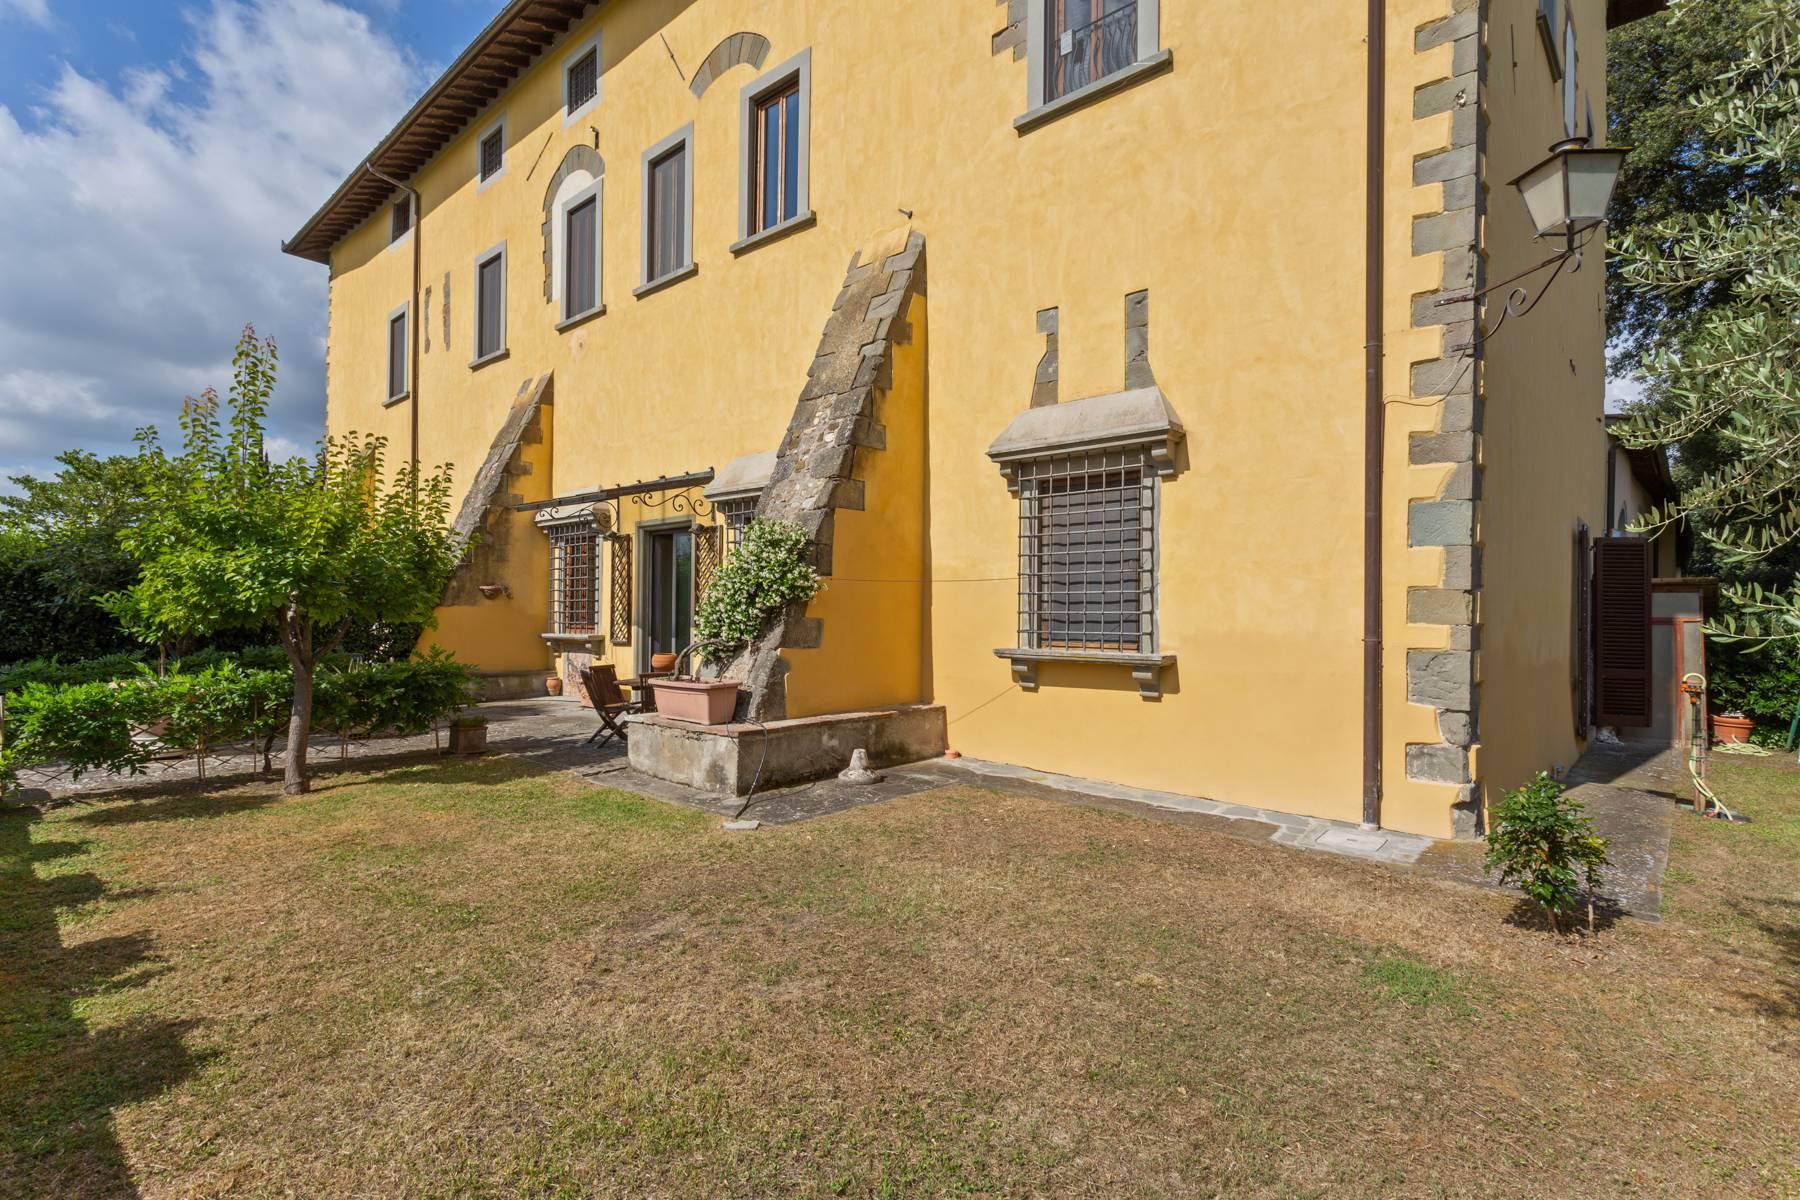 Splendido appartamento in villa storica del XVI secolo con giardino - 3